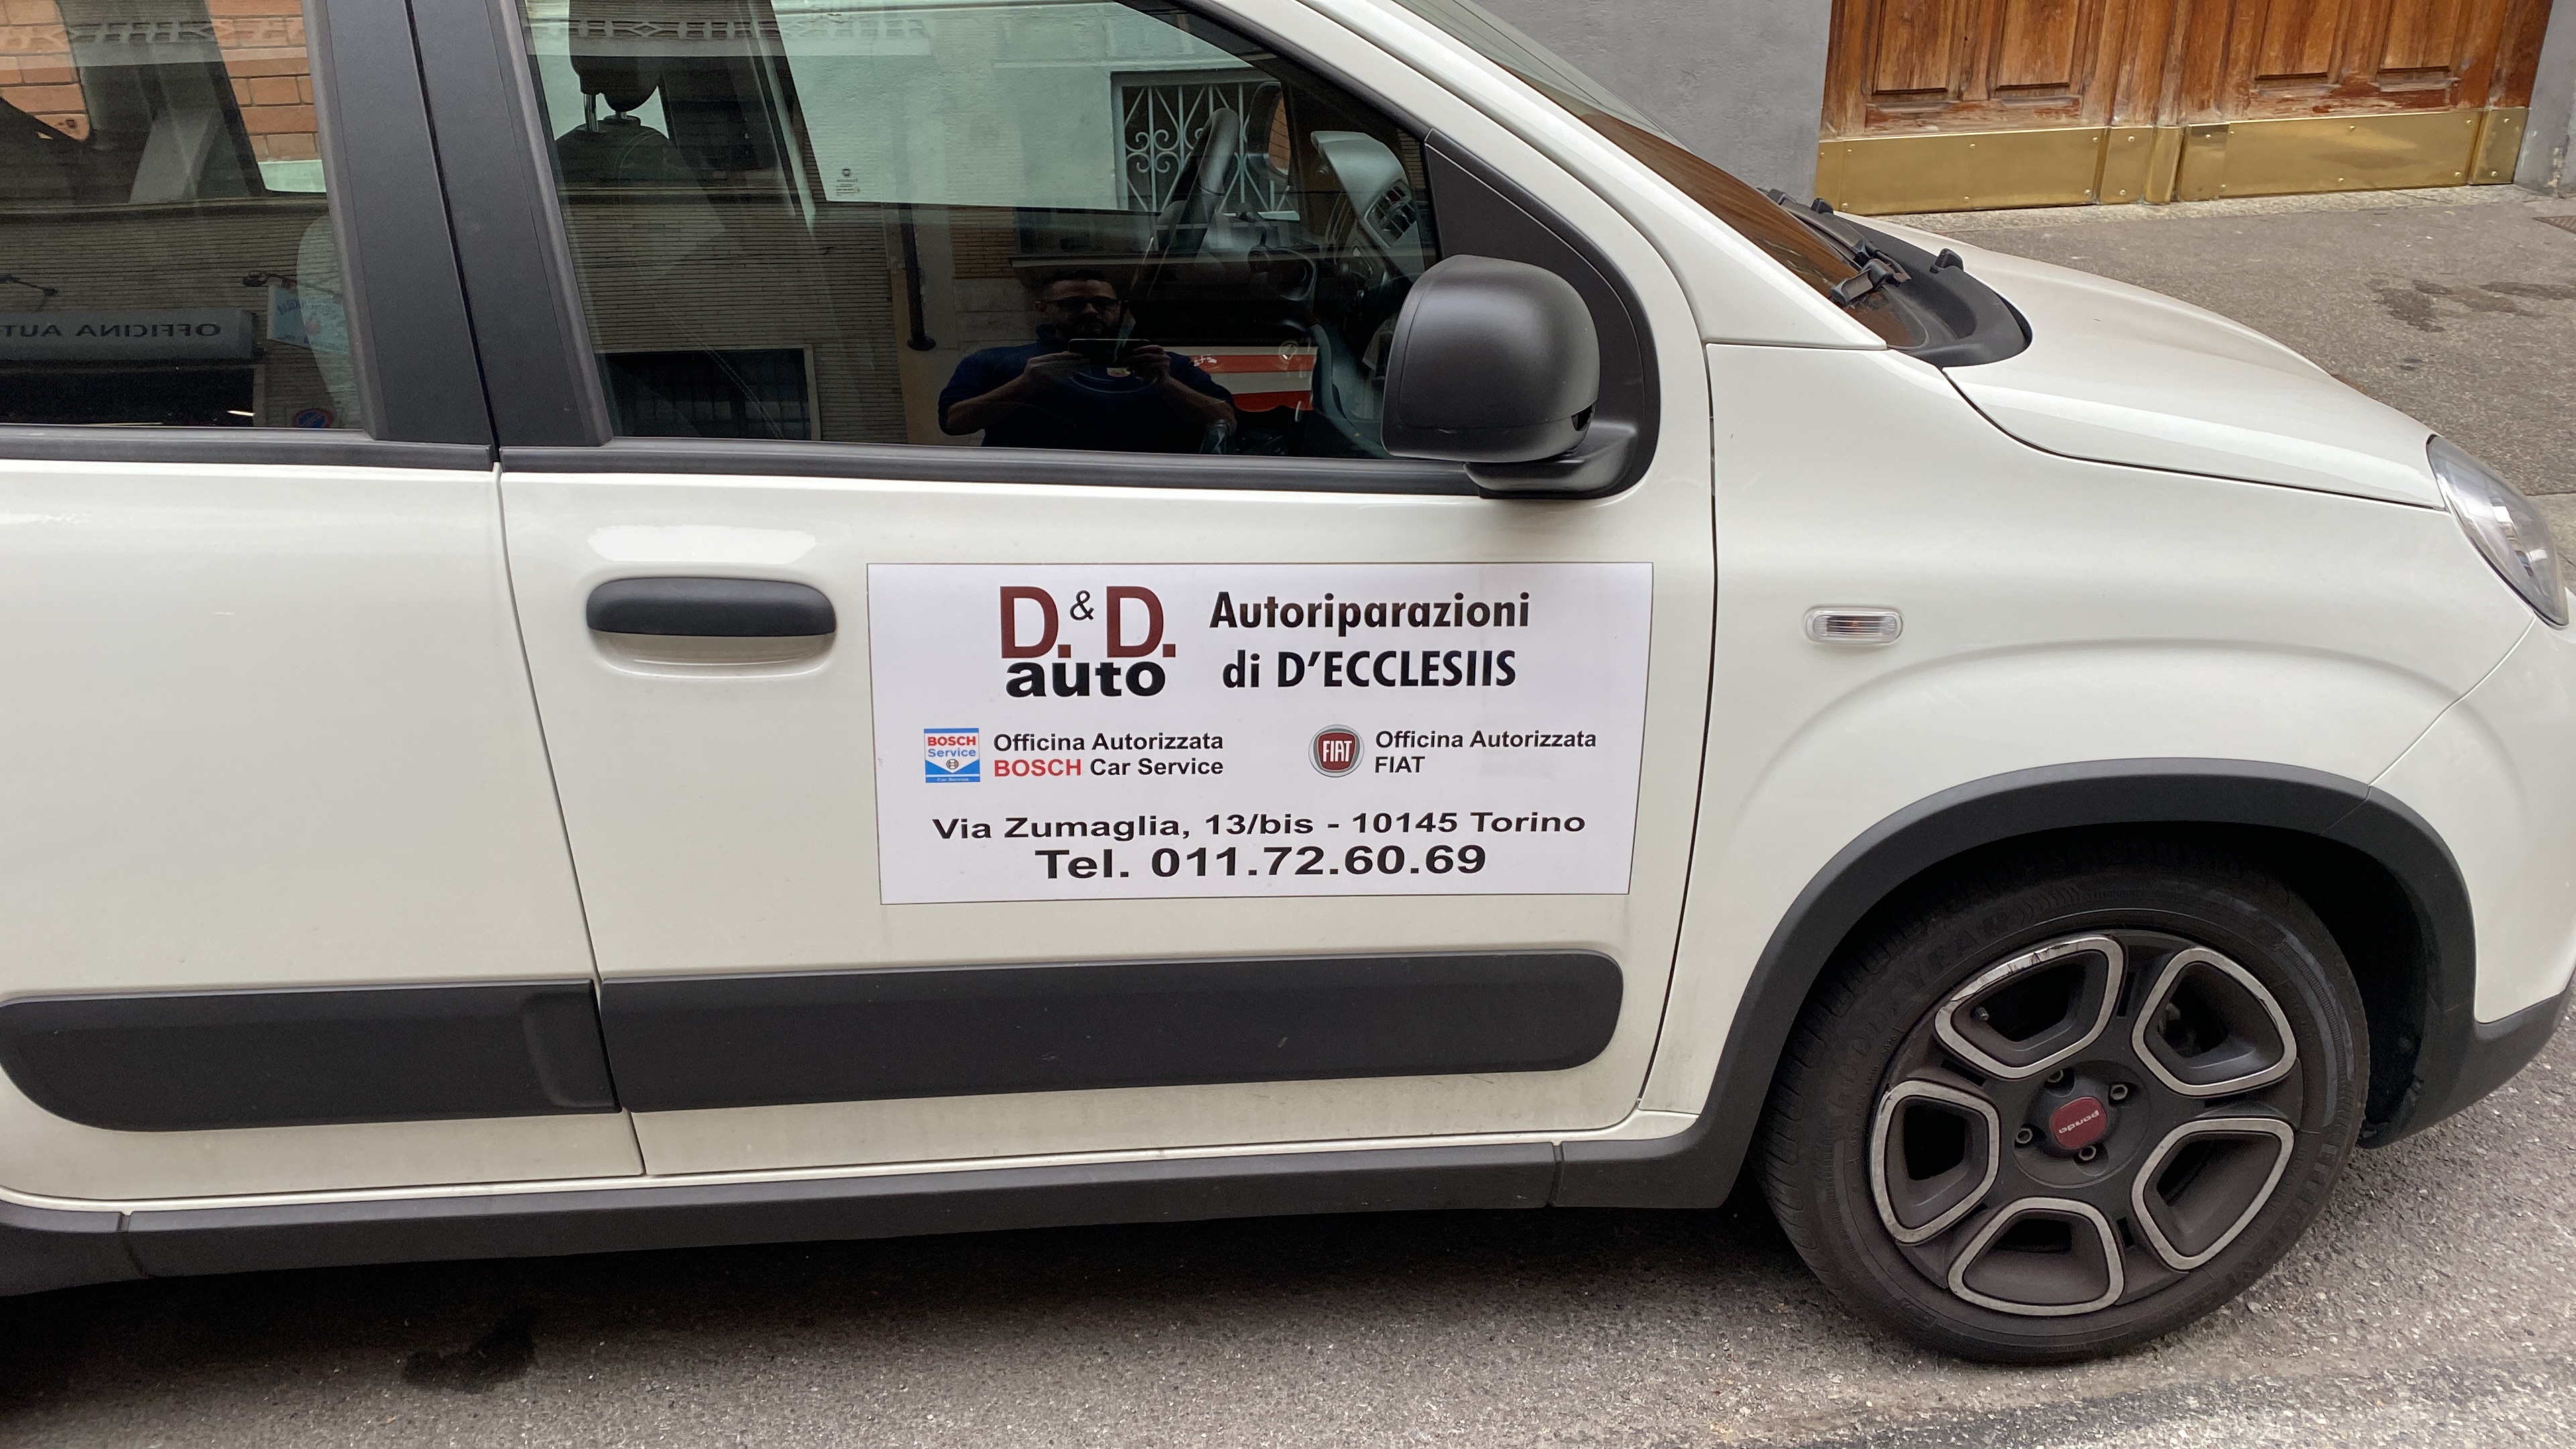 La D.& D. Auto Torino di D’ECCLESIIS mette a disposizione per i propri clienti un parco vetture sostitutive gratuite per qualsiasi tipo di intervento da effettuare 